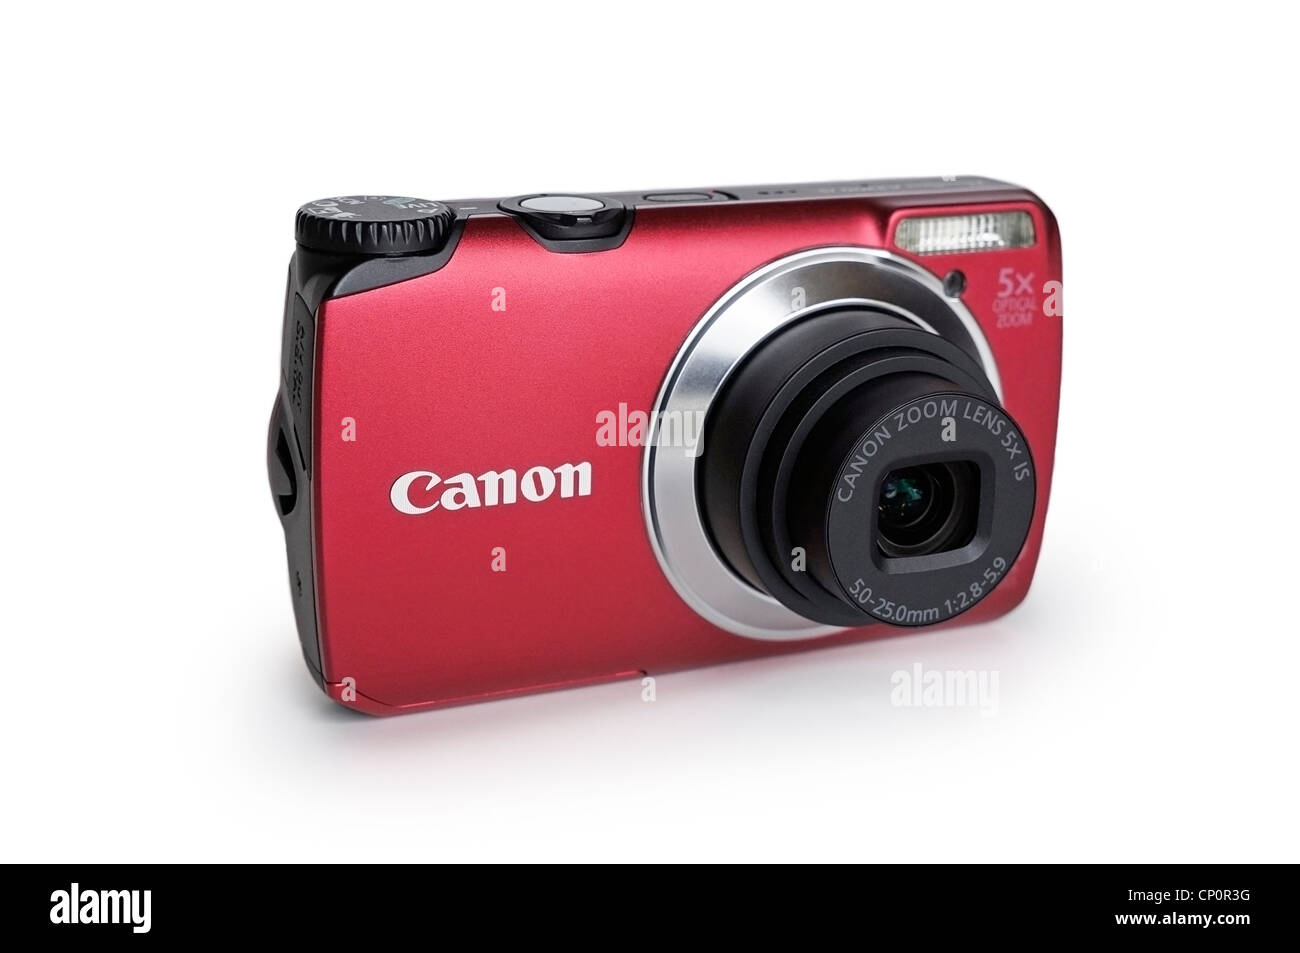 Fotocamera digitale, Punto e sparare Compact Foto Stock